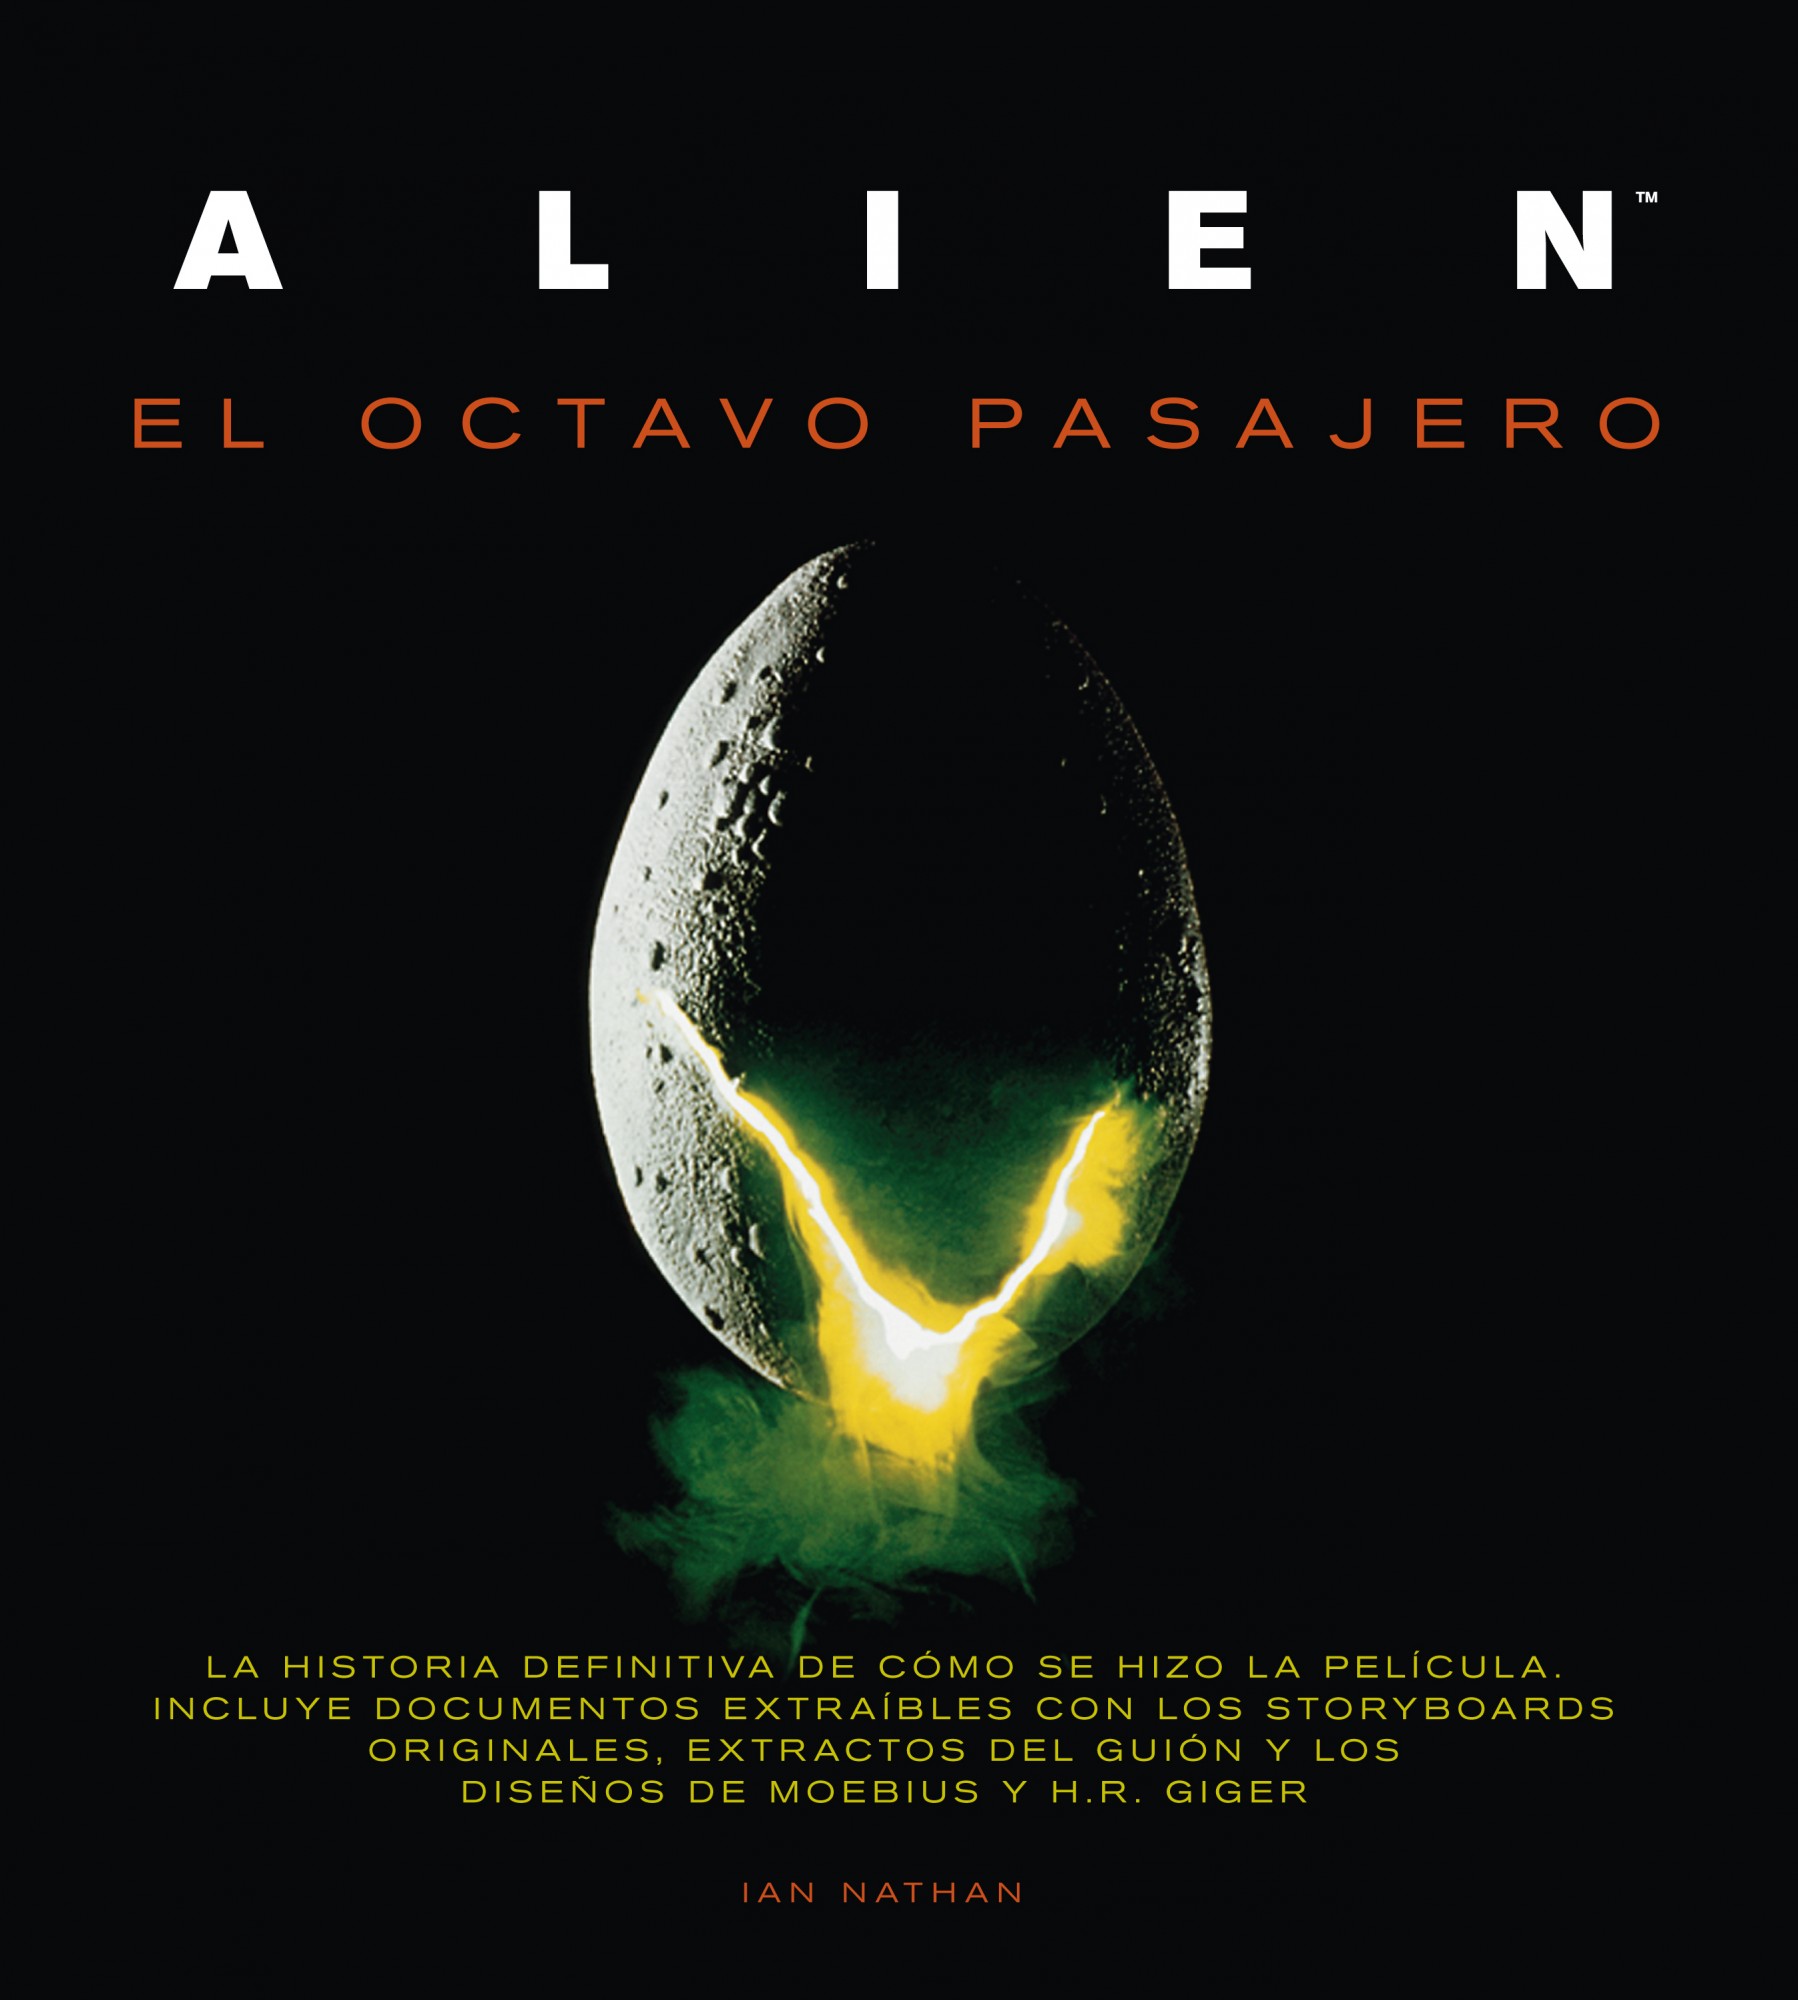 Alien | Comprar Libro | Ocho y Medio Libros de Cine